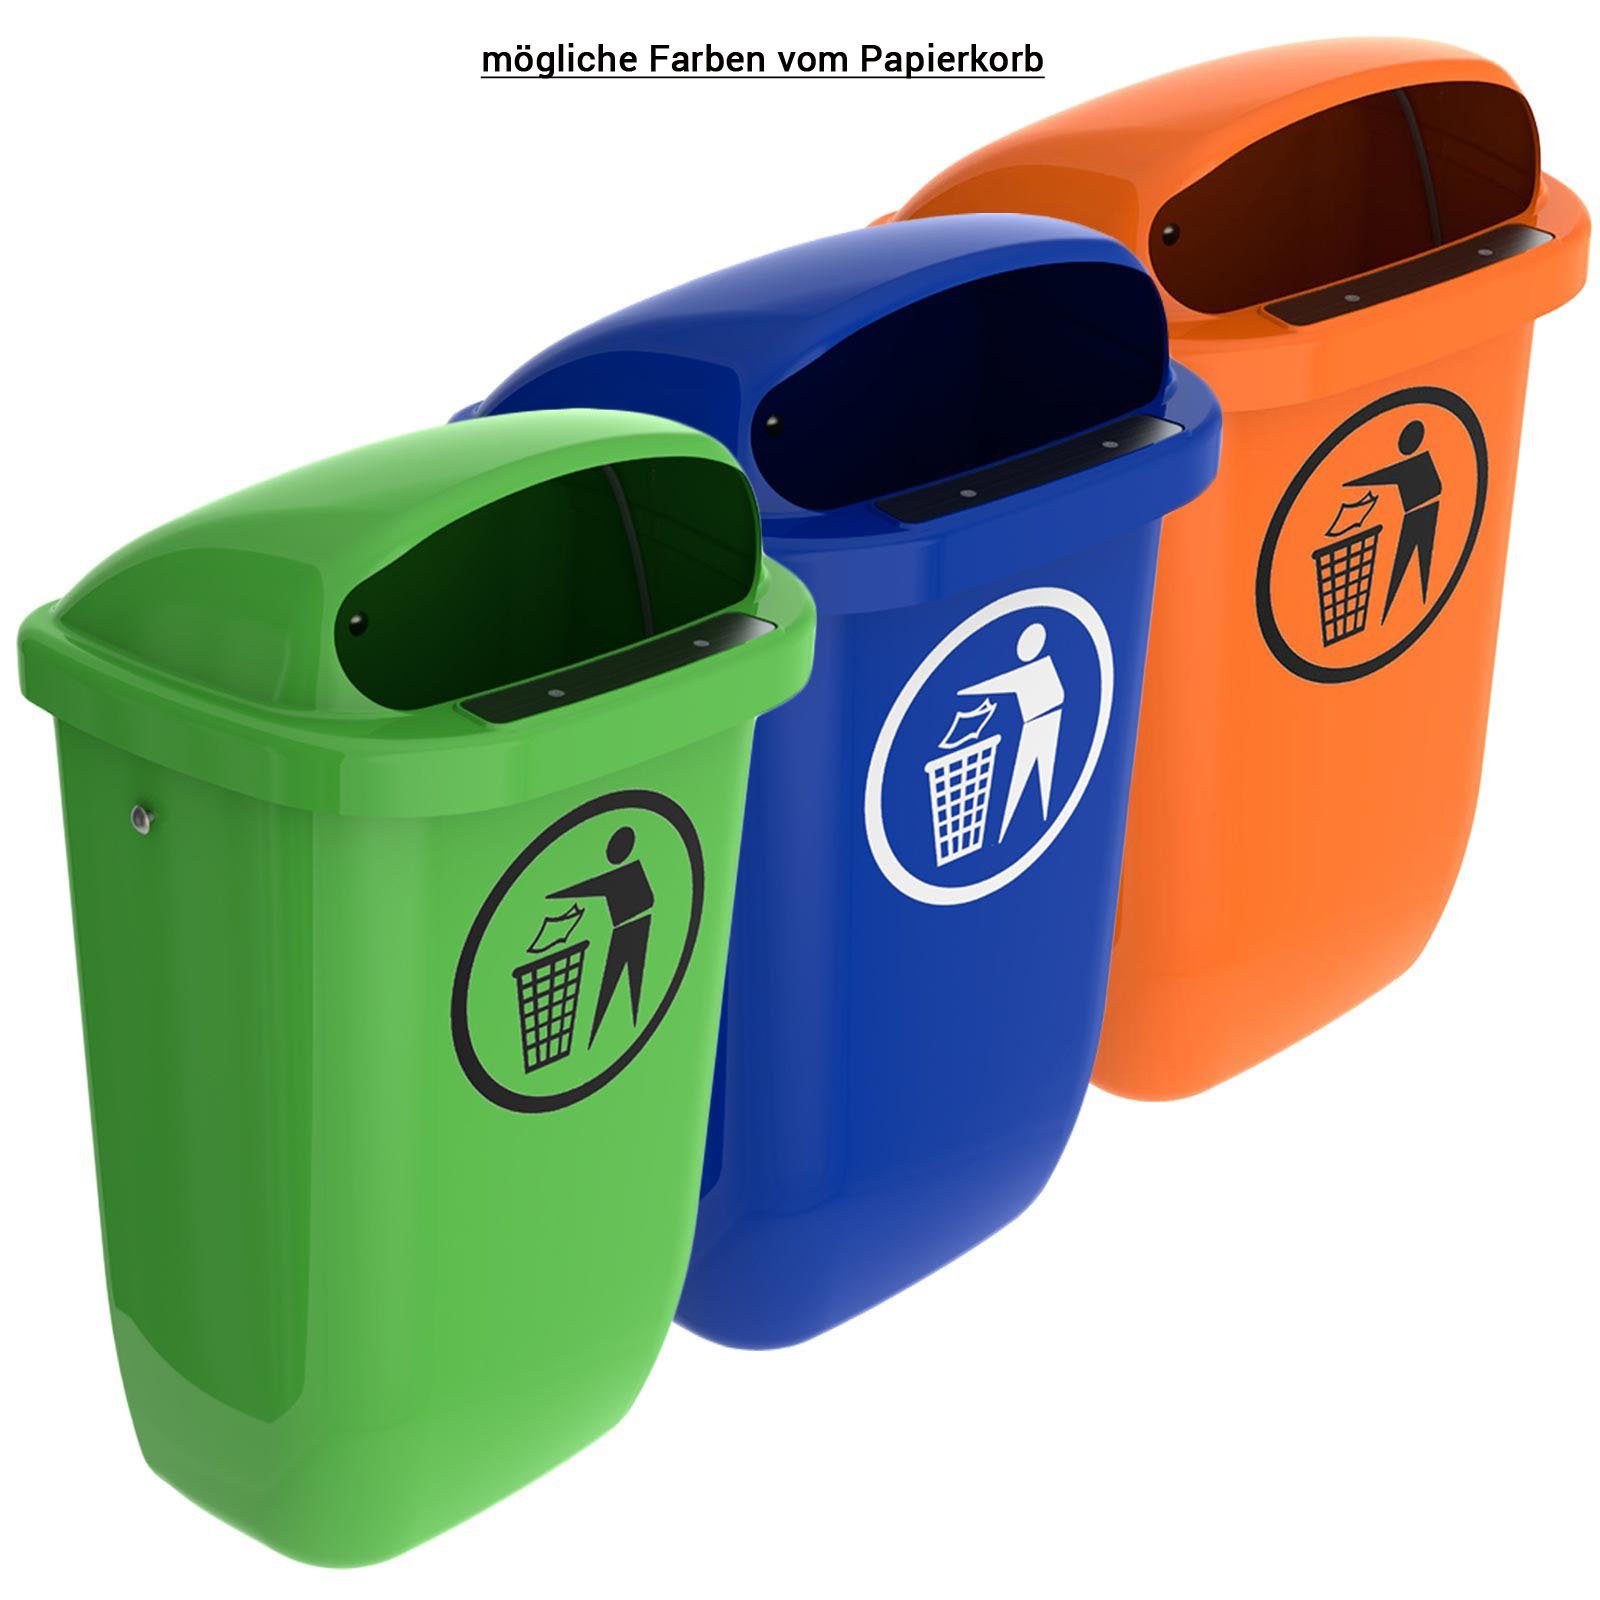 mit Mülleimer grün Abfallbehälter Regenhaube SULO Papierkorb Original Set Sulo